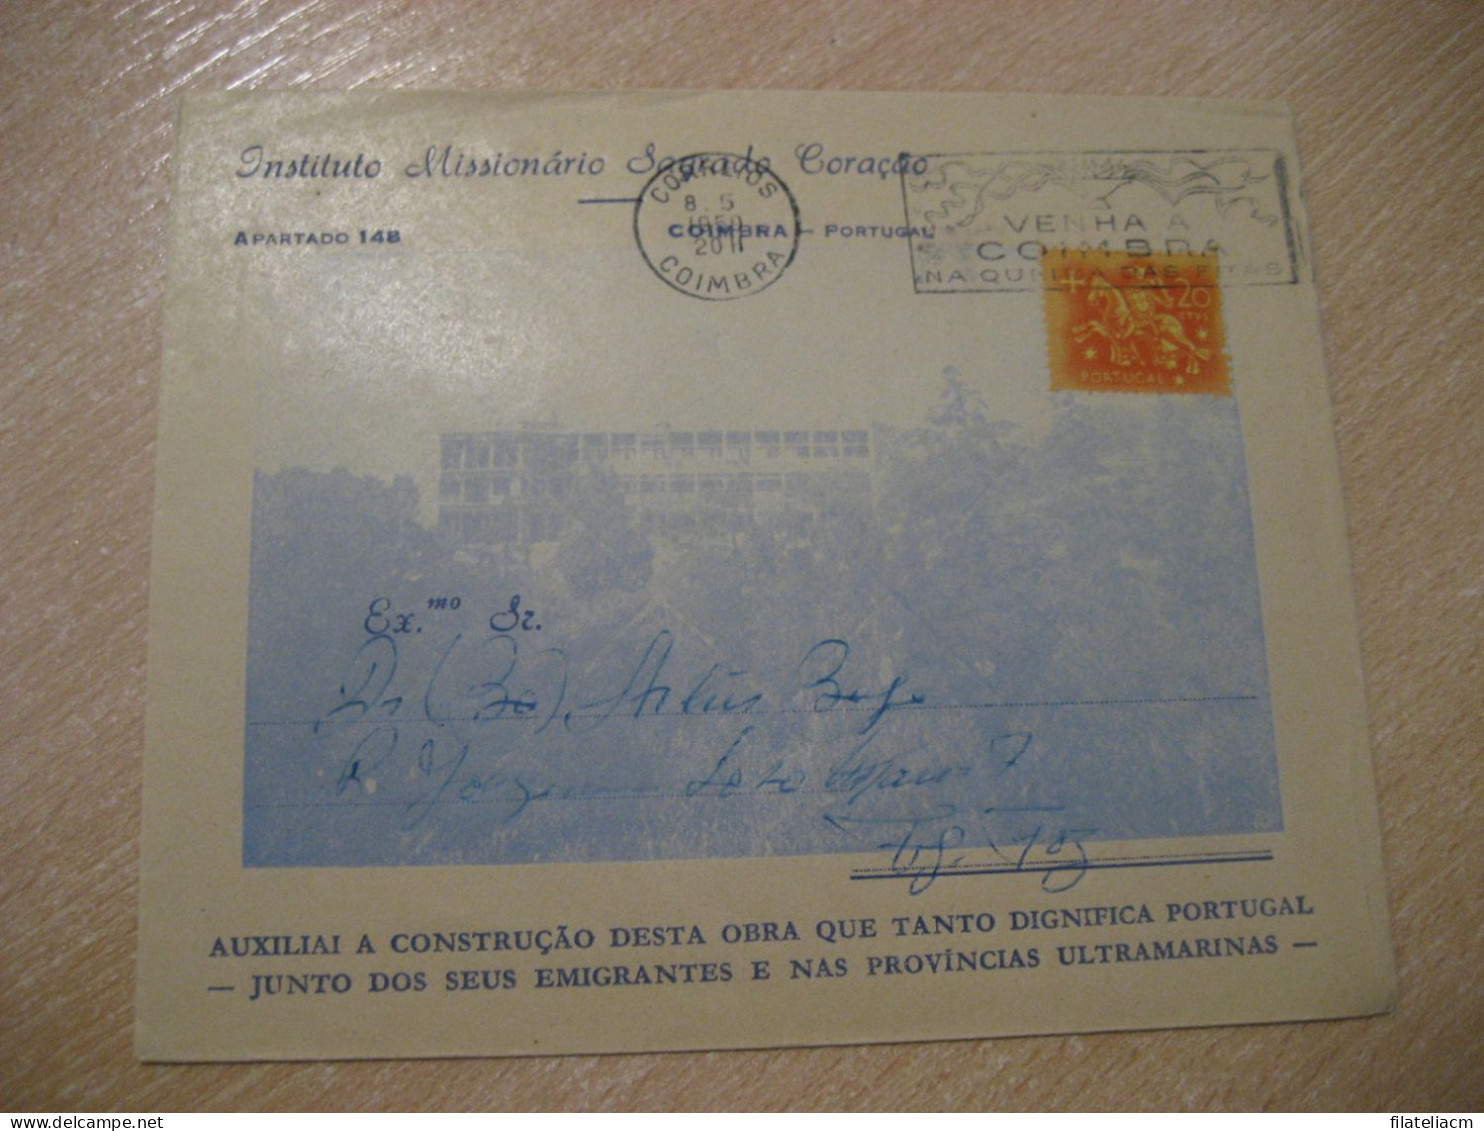 COIMBRA 1959 To Figueira Da Foz Cancel Instituto Missionario Sagrado Coraçao Cover PORTUGAL - Briefe U. Dokumente